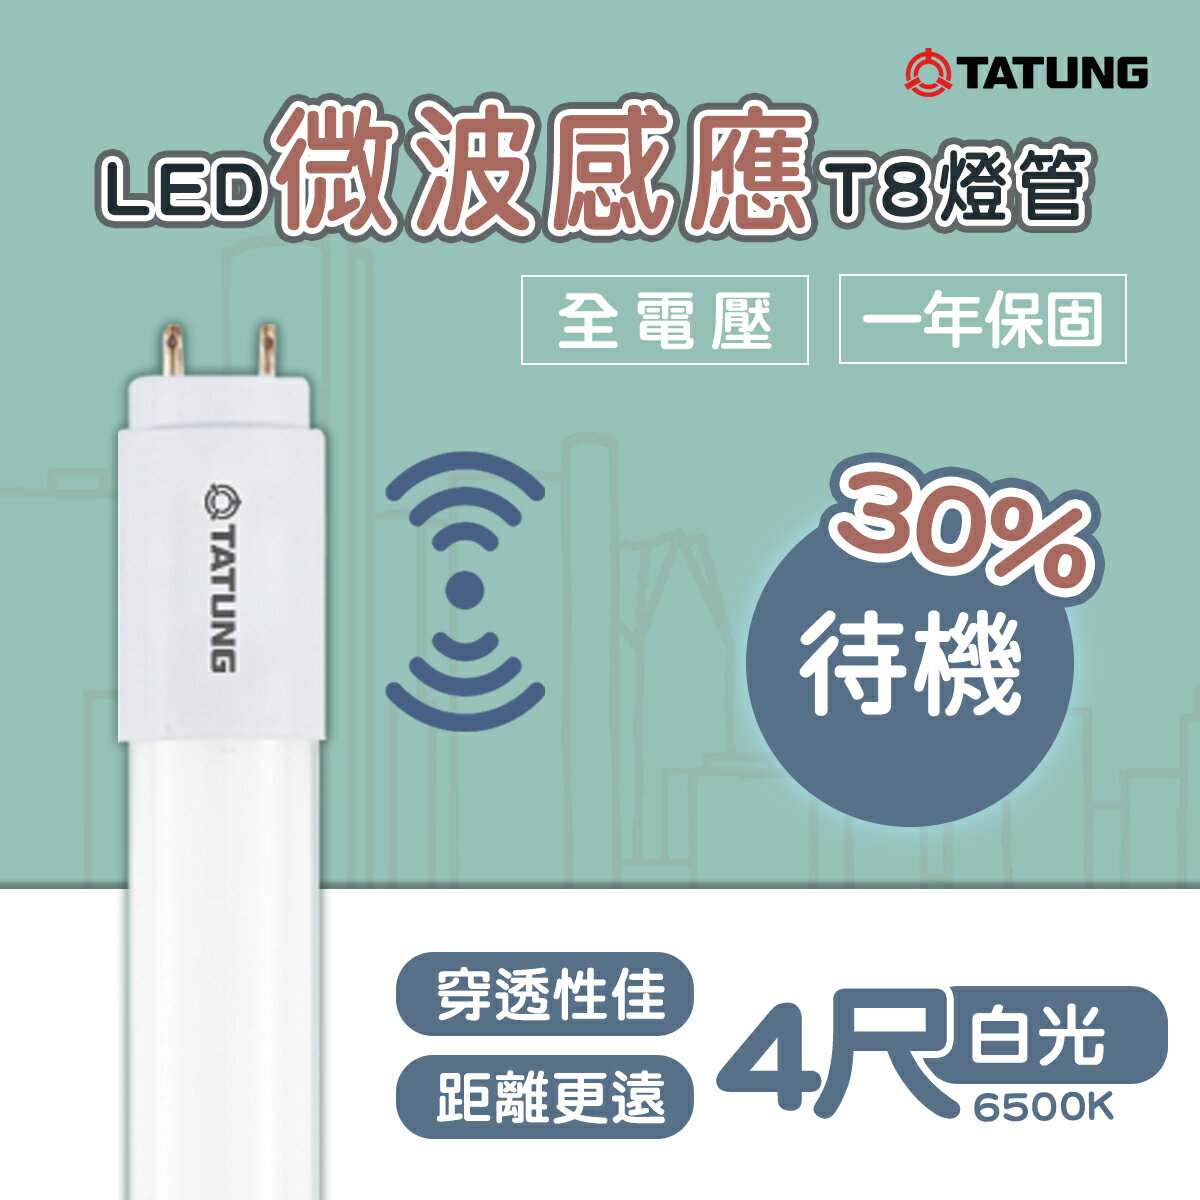 🚚大同TATUNG LED 節能 微波 感應 T8燈管 16W 4尺 待機30% TATUNG-TL16W120D-S